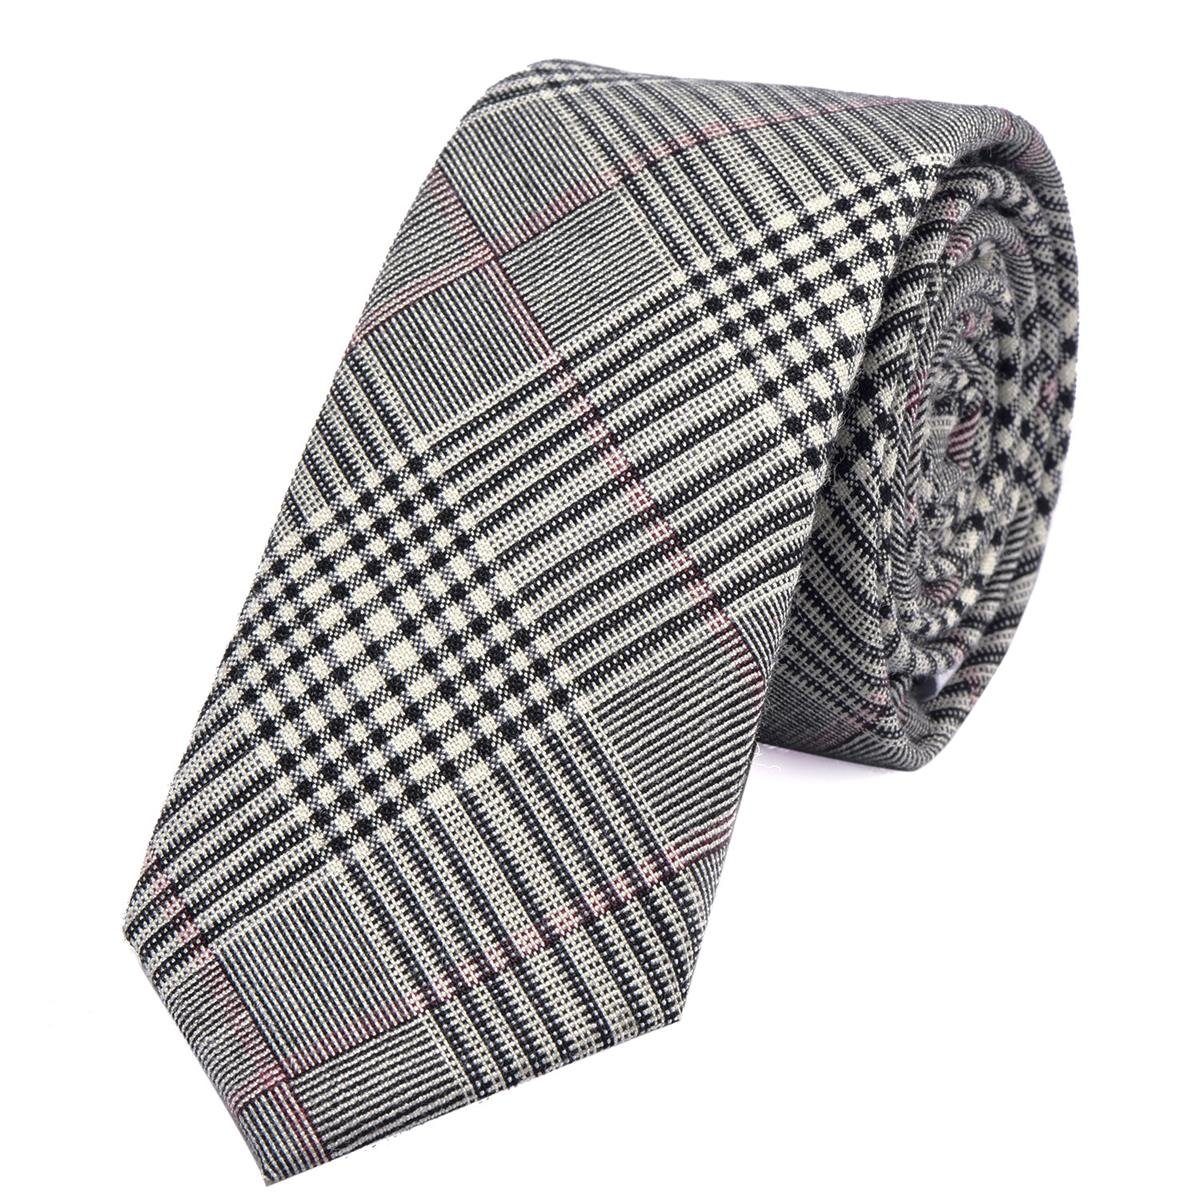 DonDon Krawatte Herren Krawatte 6 cm mit Karos oder Streifen (Packung, 1-St., 1x Krawatte) Baumwolle, kariert oder gestreift, für Büro oder festliche Veranstaltungen grau-schwarz kariert